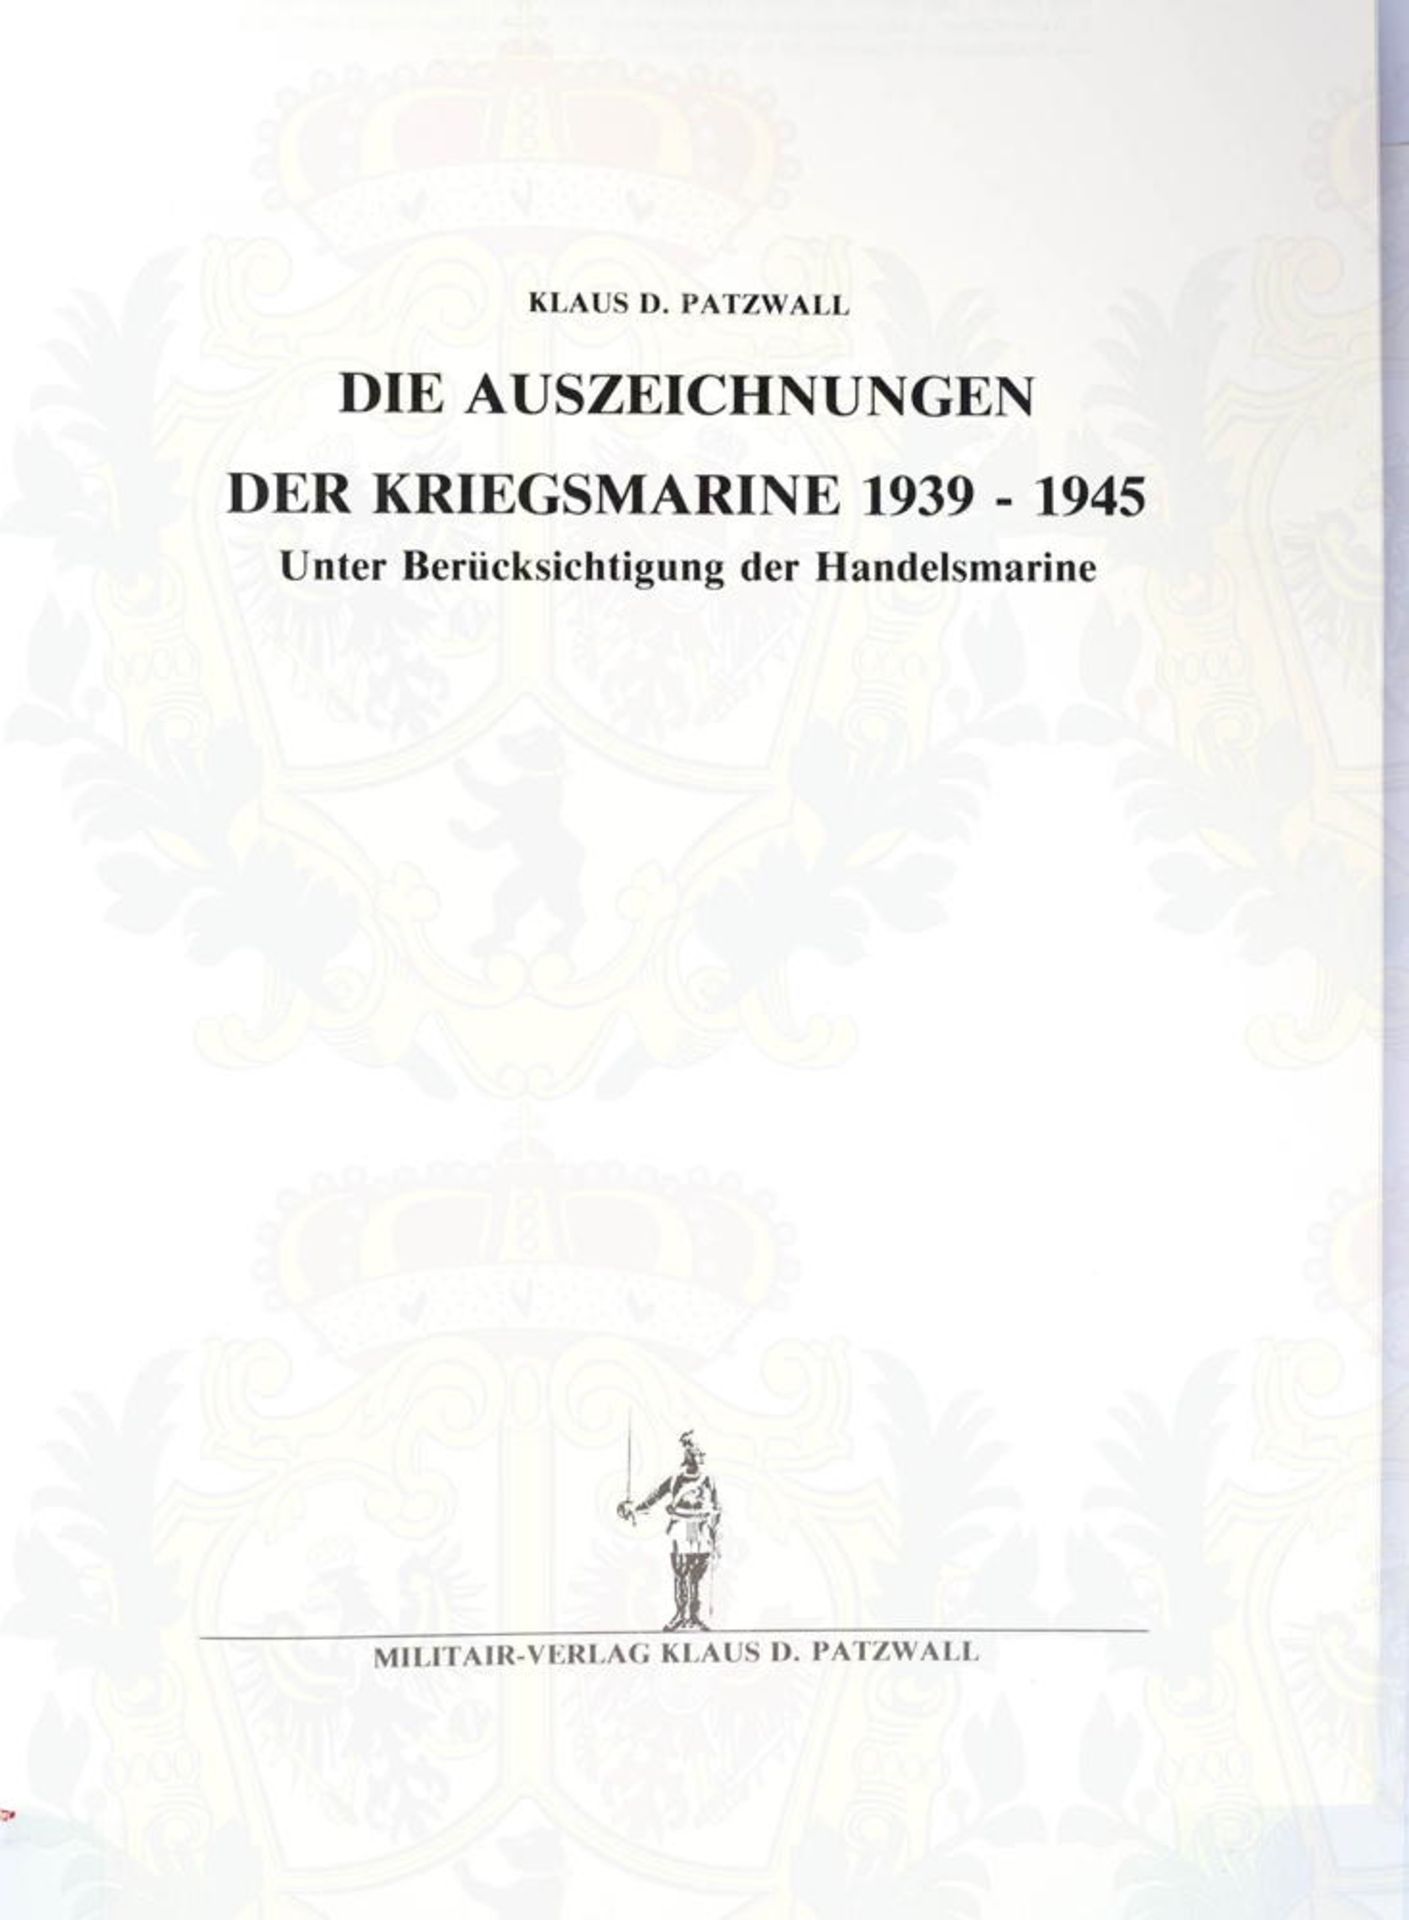 DIE AUSZEICHNUNGEN DER KRIEGSMARINE 1939-1945 - Image 2 of 2